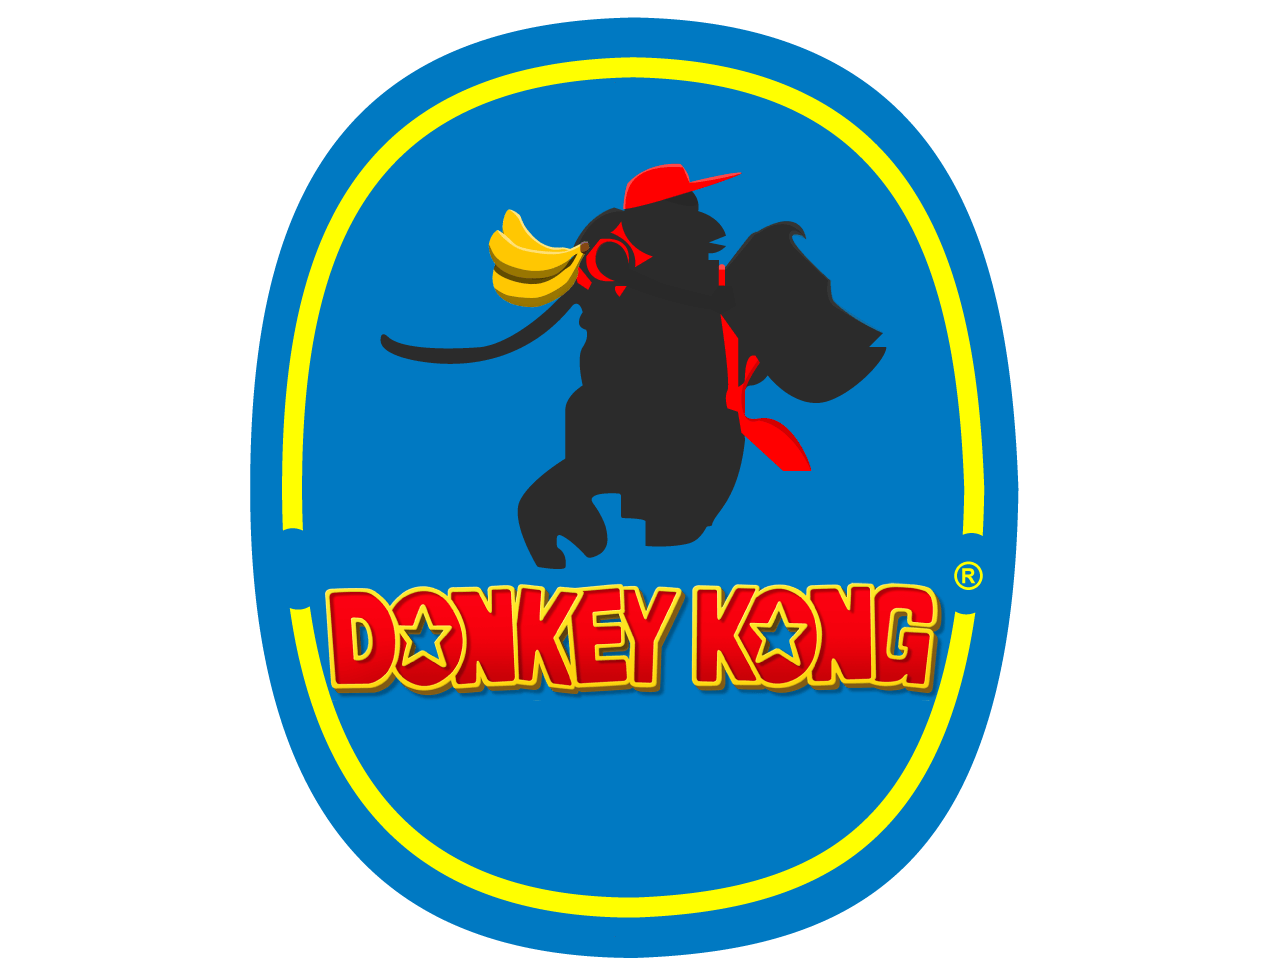 Produce Company Logo - Donkey Kong Banana Company Logo by Yusif Alomeri | Dribbble | Dribbble